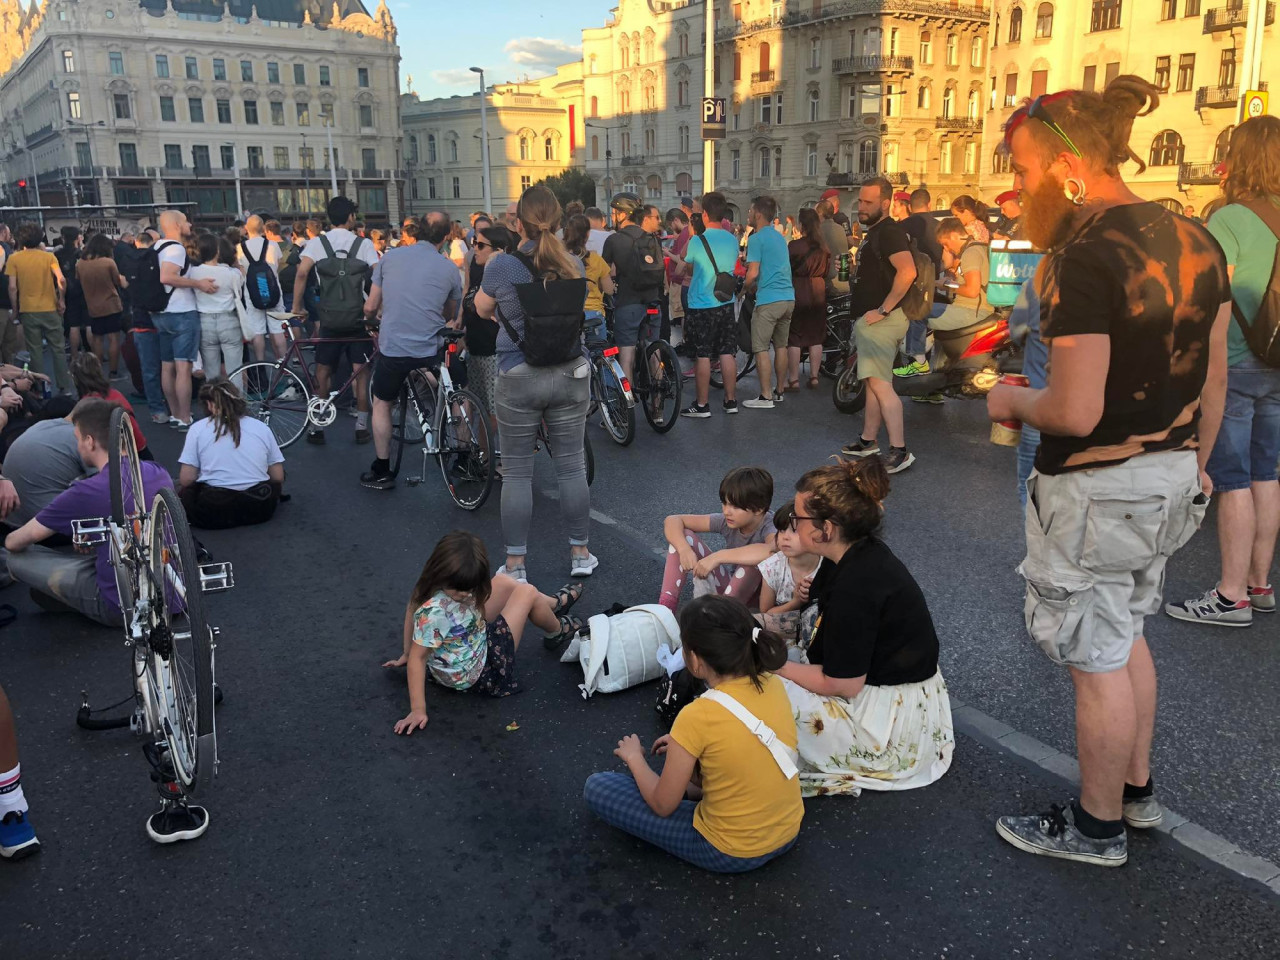 A Magyar Kétfarkú Kutya Párt tüntetése Budapesten, az Erzsébet hídon 2022. július 15-én (Fotó: R. Kiss Kornélia/Magyar Hang)